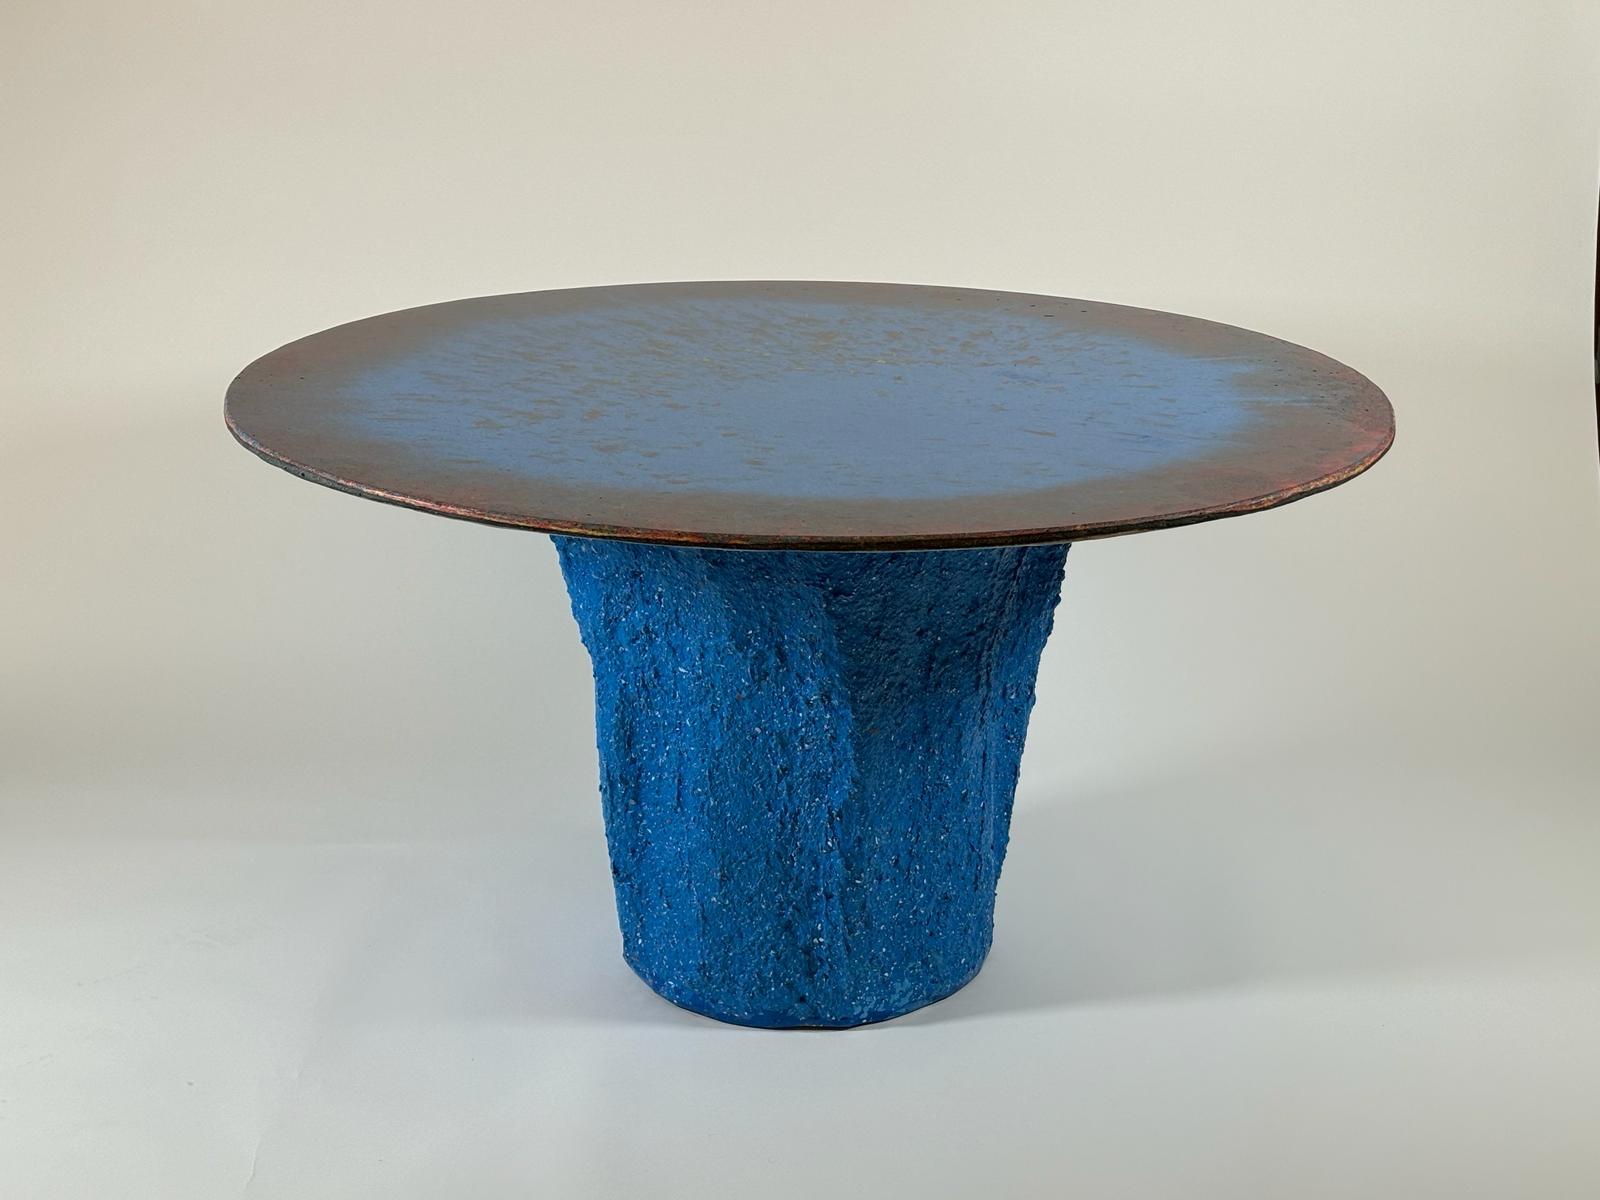 Der Tisch aus der Serie Kernel ist ein Einzelstück, das vom Designer vollständig von Hand gefertigt wird. Vollständig aus Glebanite, einer speziellen Mischung aus recyceltem und wiederverwertbarem Glasfasergewebe, gefertigt. Ein Kunstwerk der